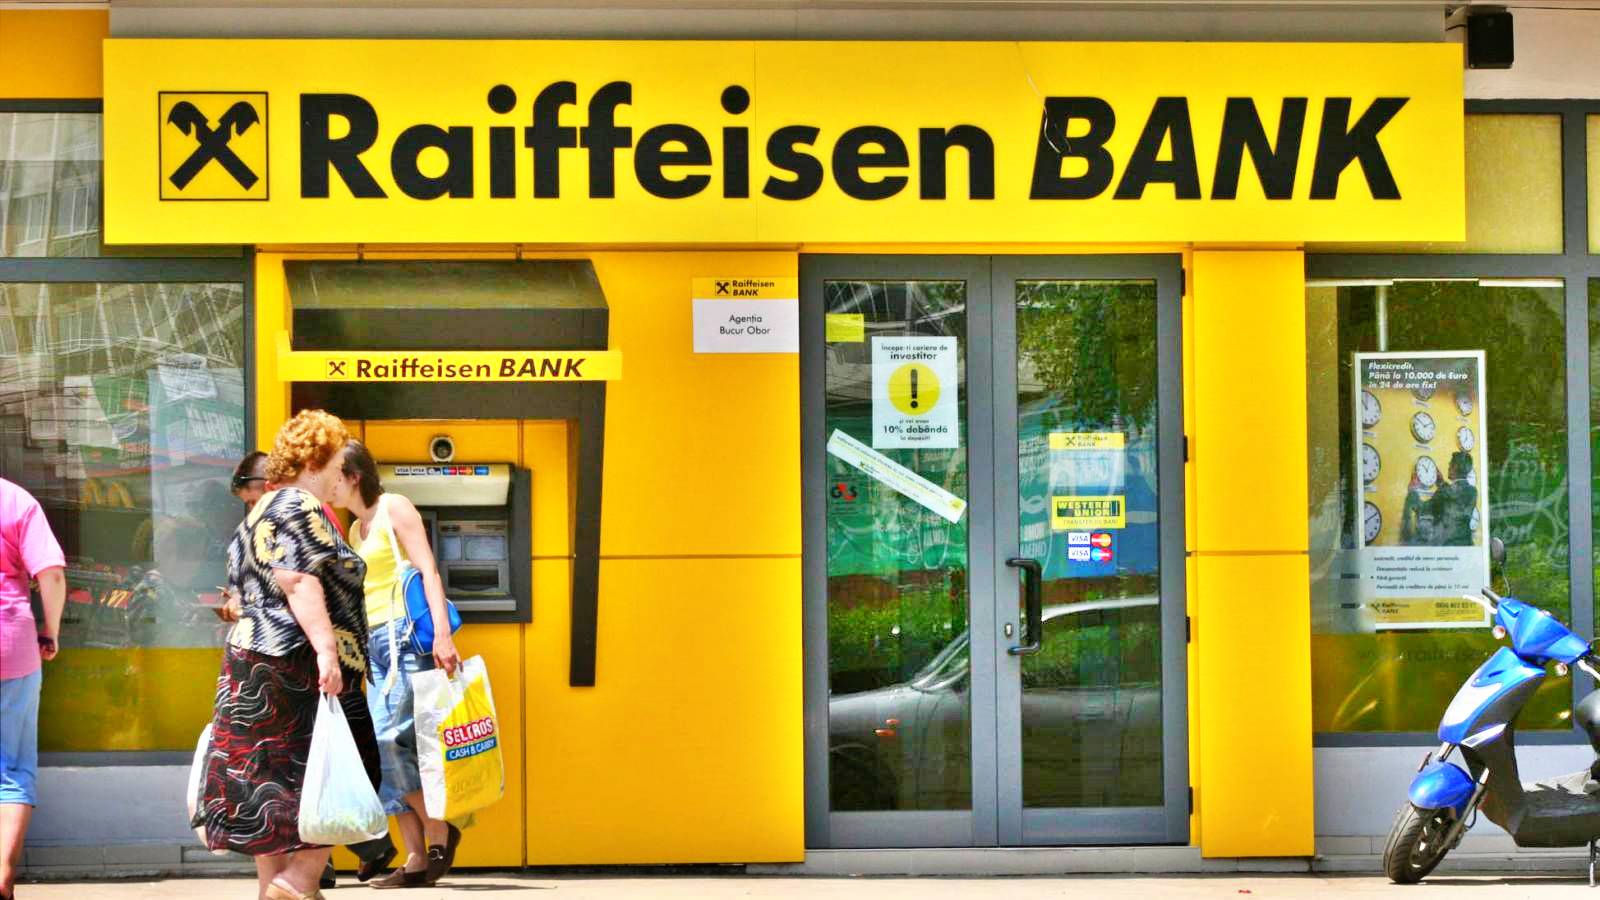 Raiffeisen Bank warnings